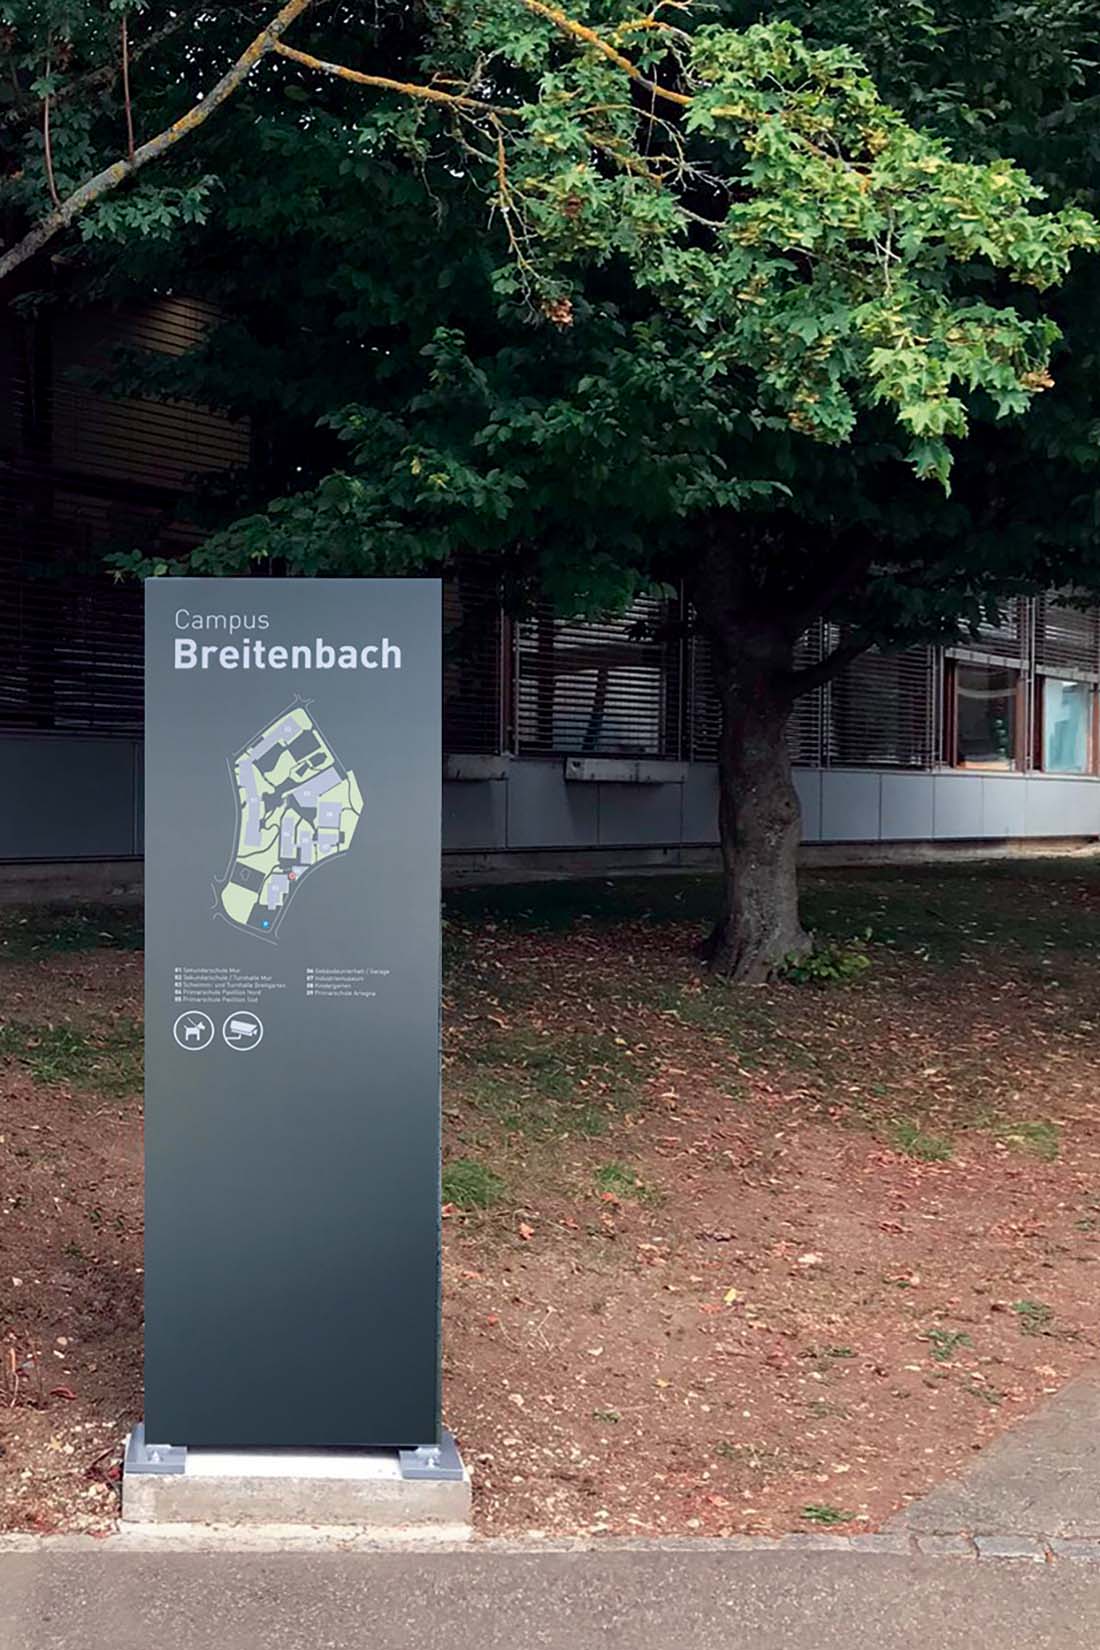 Signaletik Projekt der Schule Breitenbach. Beschriftungs-Konzept, Produktion und Umsetzung von den Beschriftungsprofis der Frontwork